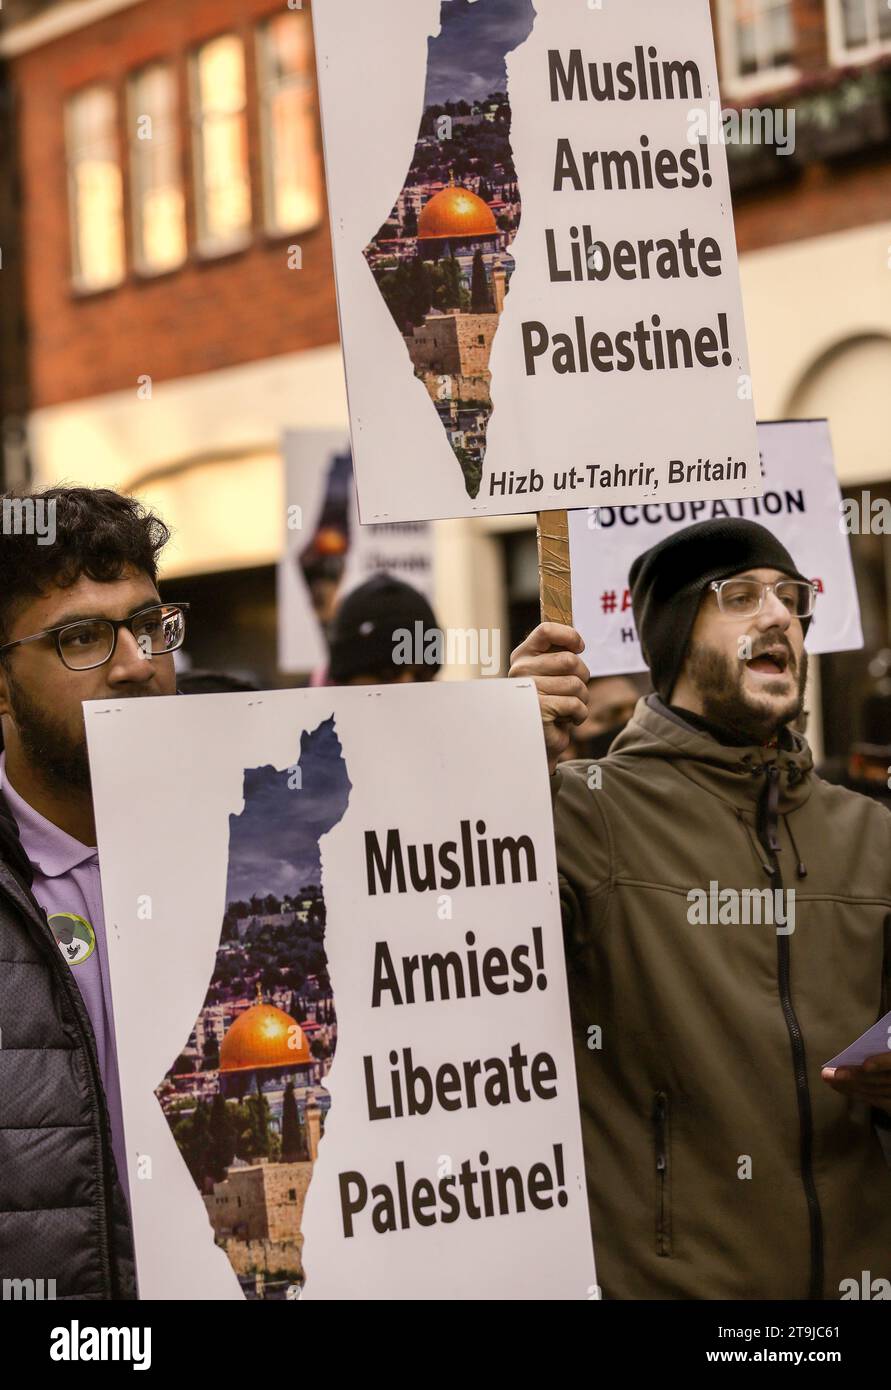 London, Großbritannien. November 2023. Die Unterstützer rufen mit Sprechern, die Plakate halten und die muslimischen Armeen auffordern, Palästina zu befreien. Hizb ut-Tahrir protestierte gegenüber der ägyptischen Botschaft und rief muslimische Armeen zur Rettung des palästinensischen Volkes auf. Aufgrund der Bedingungen gemäß Abschnitt 14 des Public Order Act können sie Balfour Mews nicht verlassen. Hizb ut-Tahrir erklärt sein Ziel, alle muslimischen Länder im Laufe der Zeit in einem einheitlichen islamischen Staat oder Kalifat zu vereinigen und die Scharia weltweit zu implementieren. Quelle: SOPA Images Limited/Alamy Live News Stockfoto